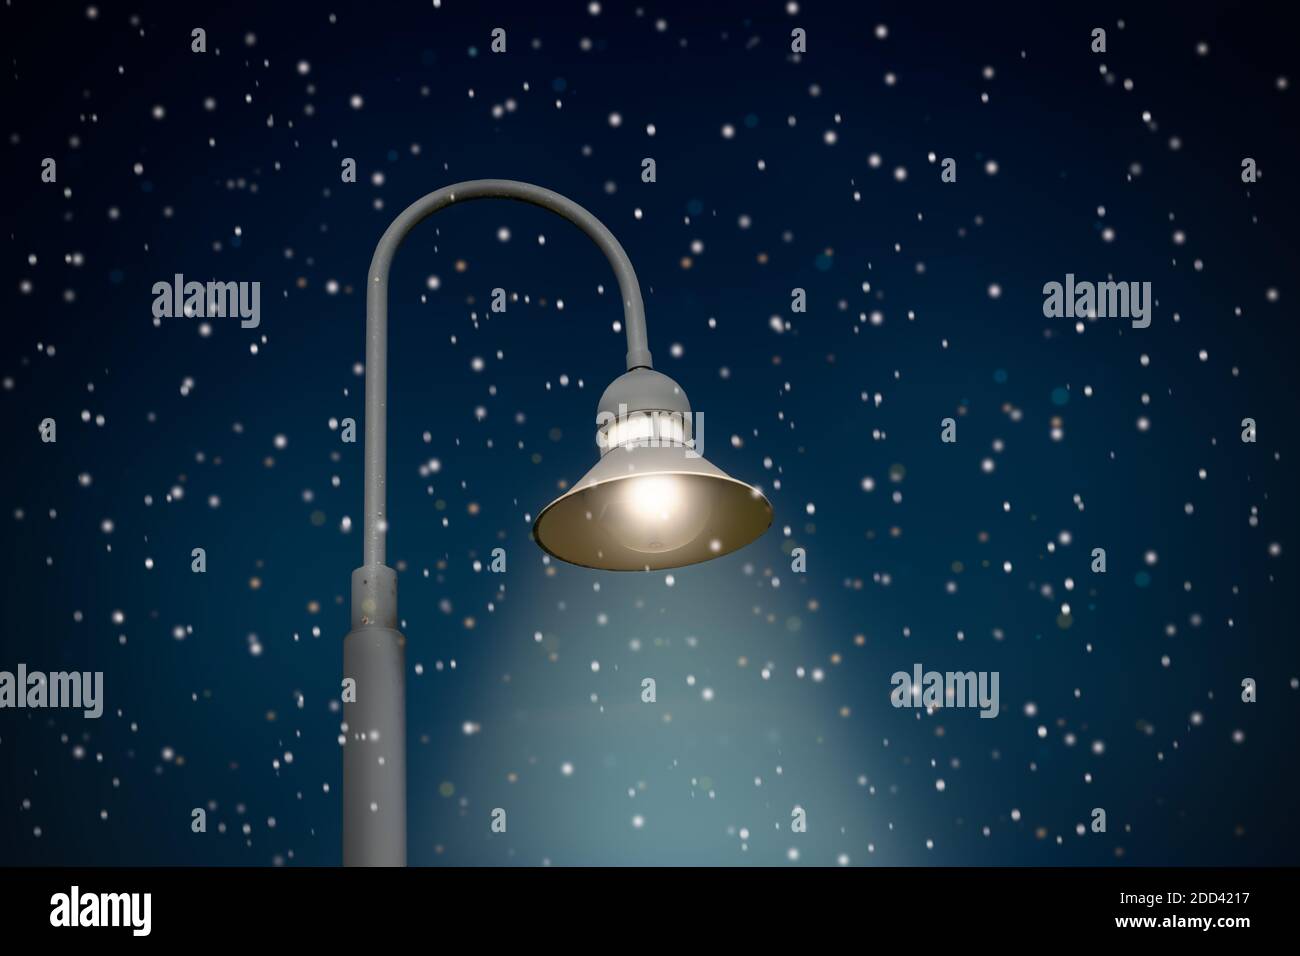 Illuminated street lamp on dark sky with snowflakes. Stock Photo